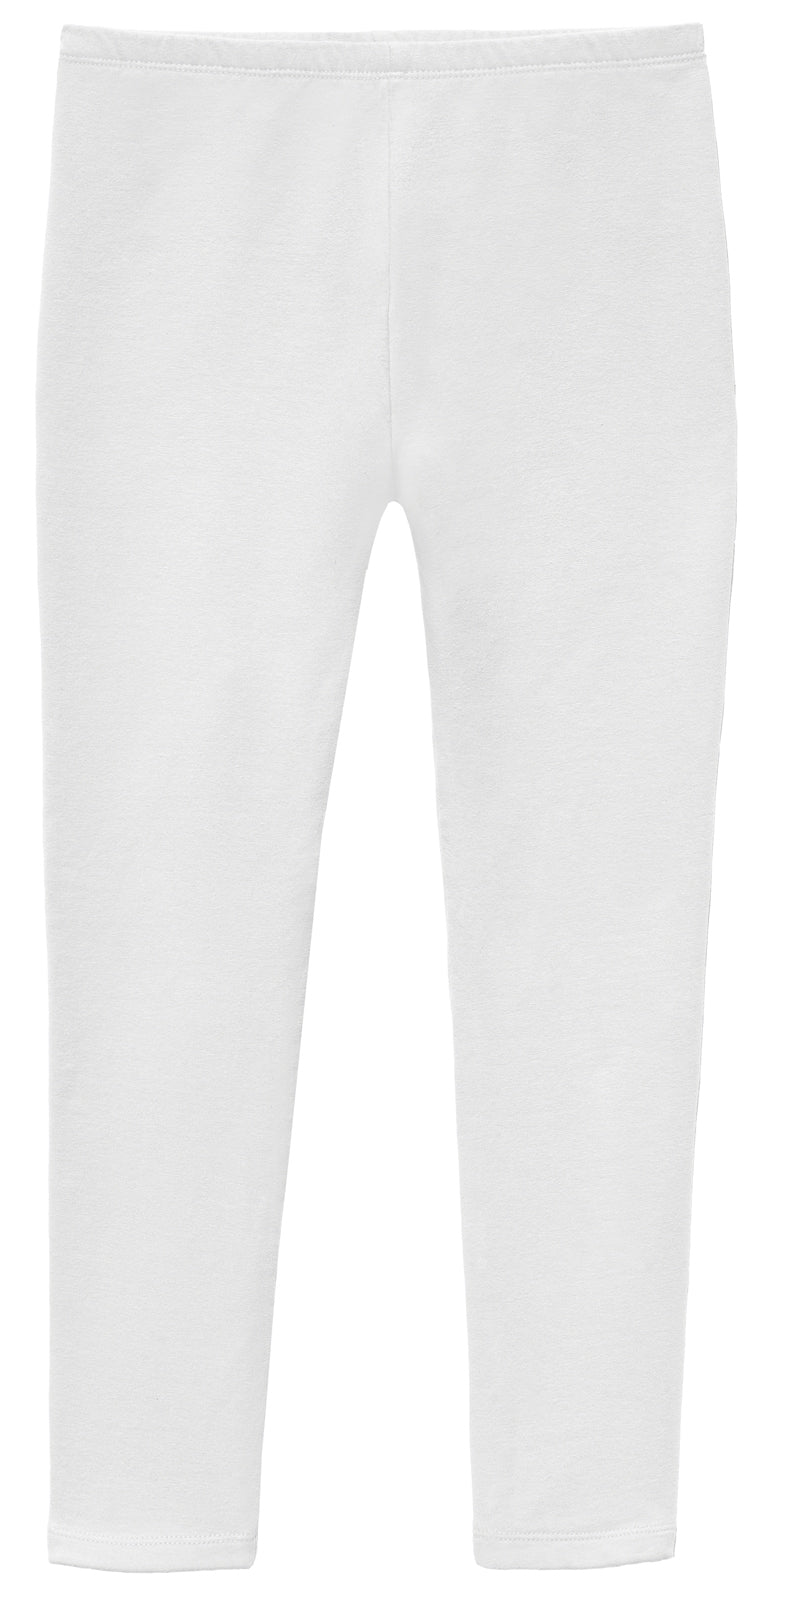 Soft Fleece Stretch Leggings| White